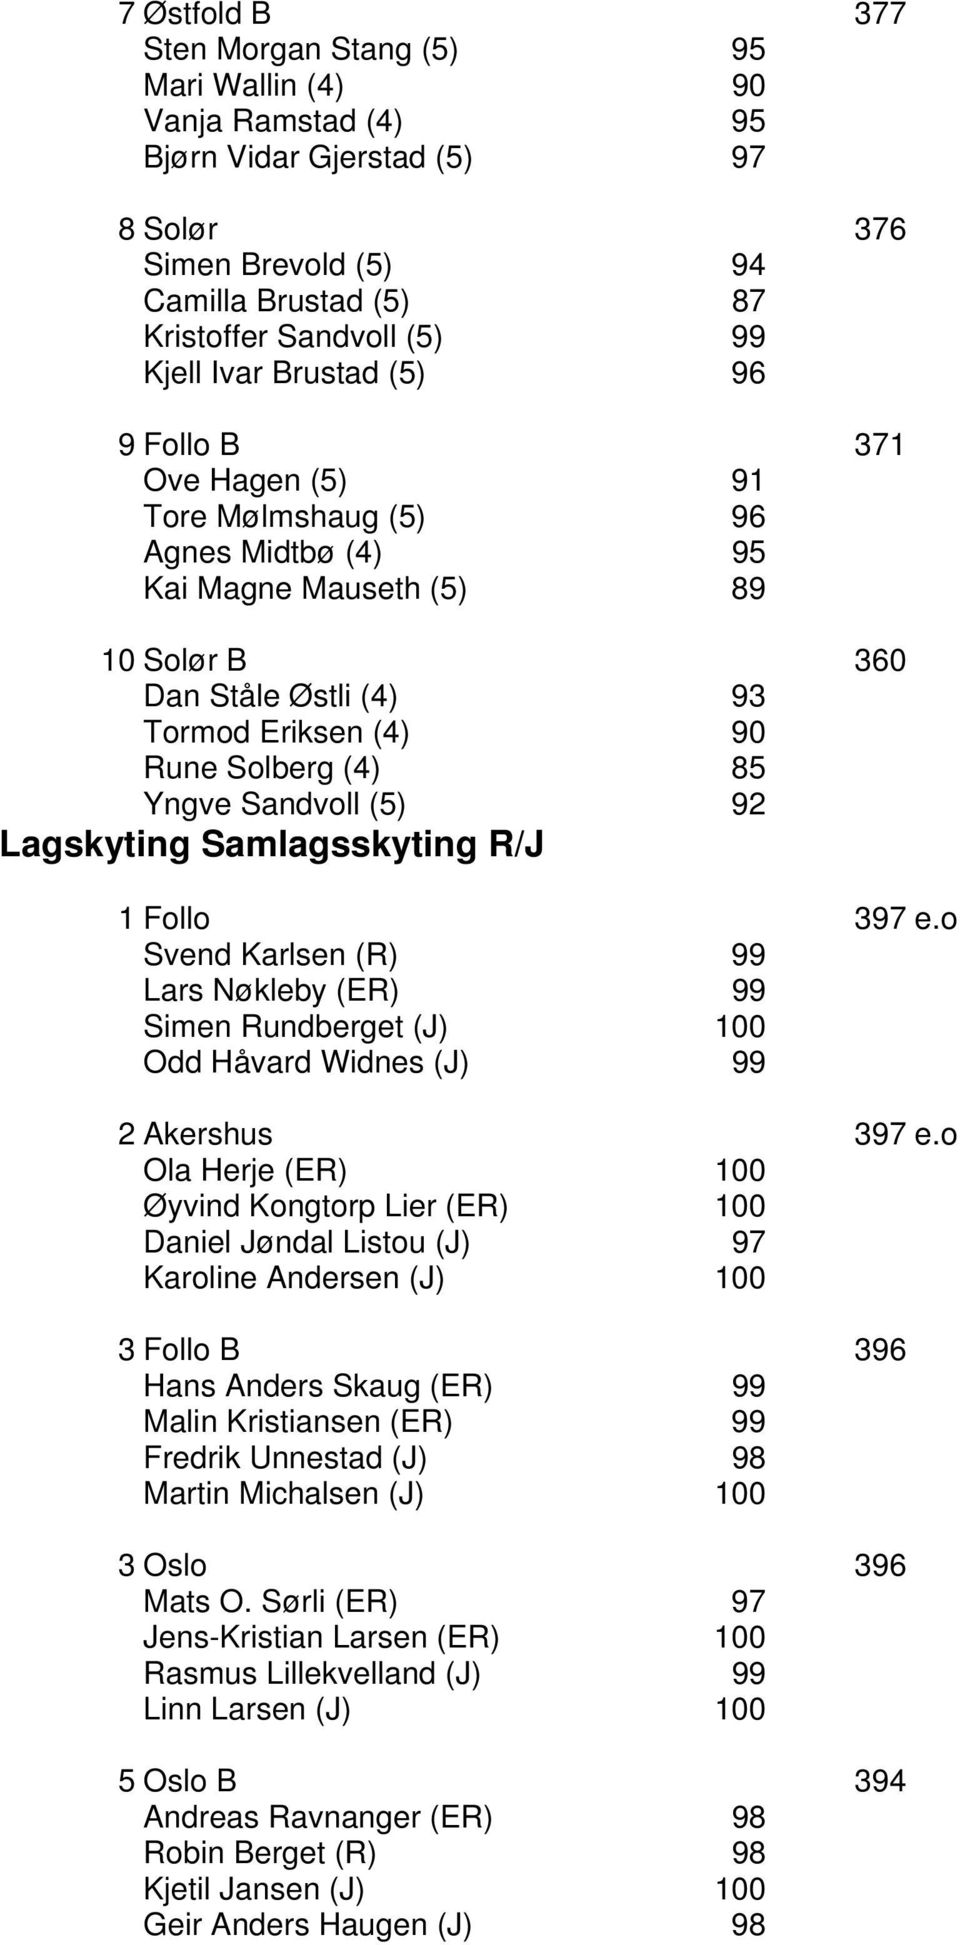 Yngve Sandvoll (5) 92 Lagskyting Samlagsskyting R/J 1 Follo 397 e.o Svend Karlsen (R) 99 Lars Nøkleby (ER) 99 Simen Rundberget (J) 100 Odd Håvard Widnes (J) 99 2 Akershus 397 e.